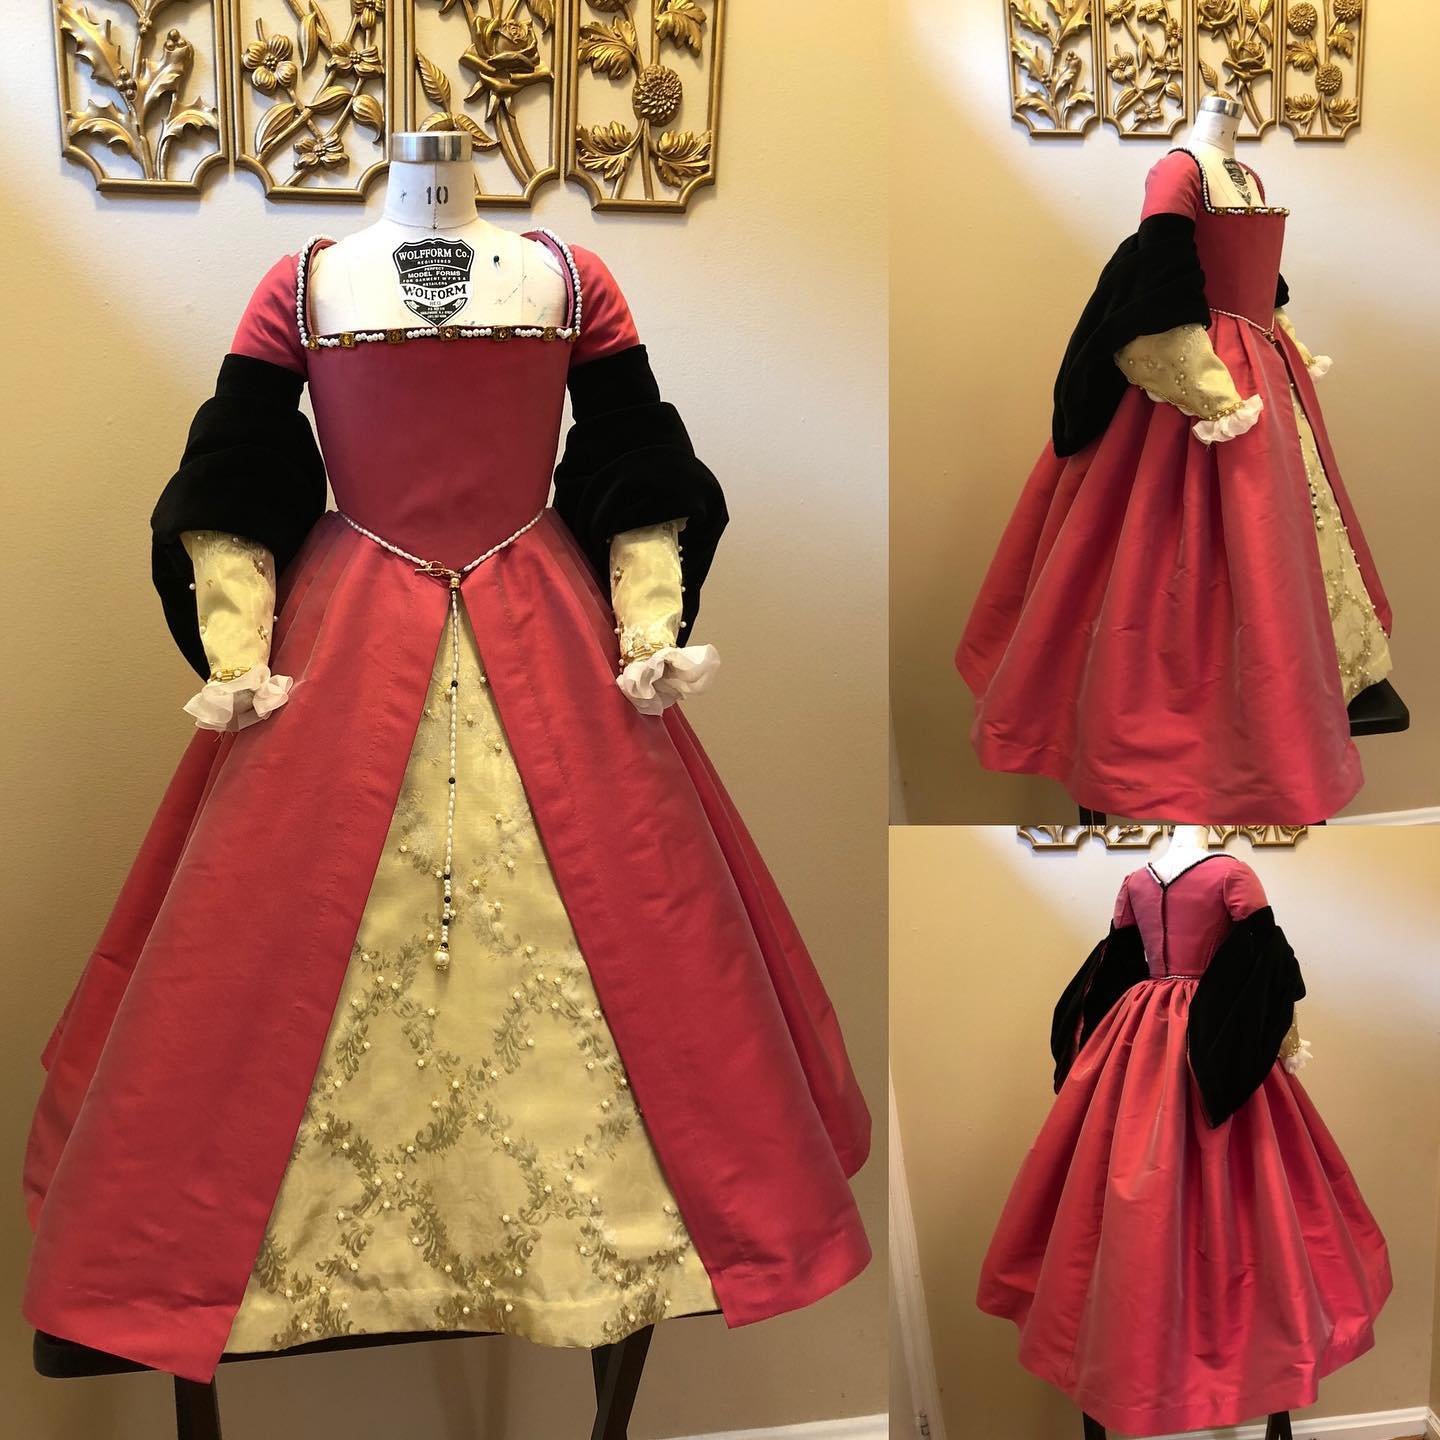 Tudor Gown, 1520s-1550s